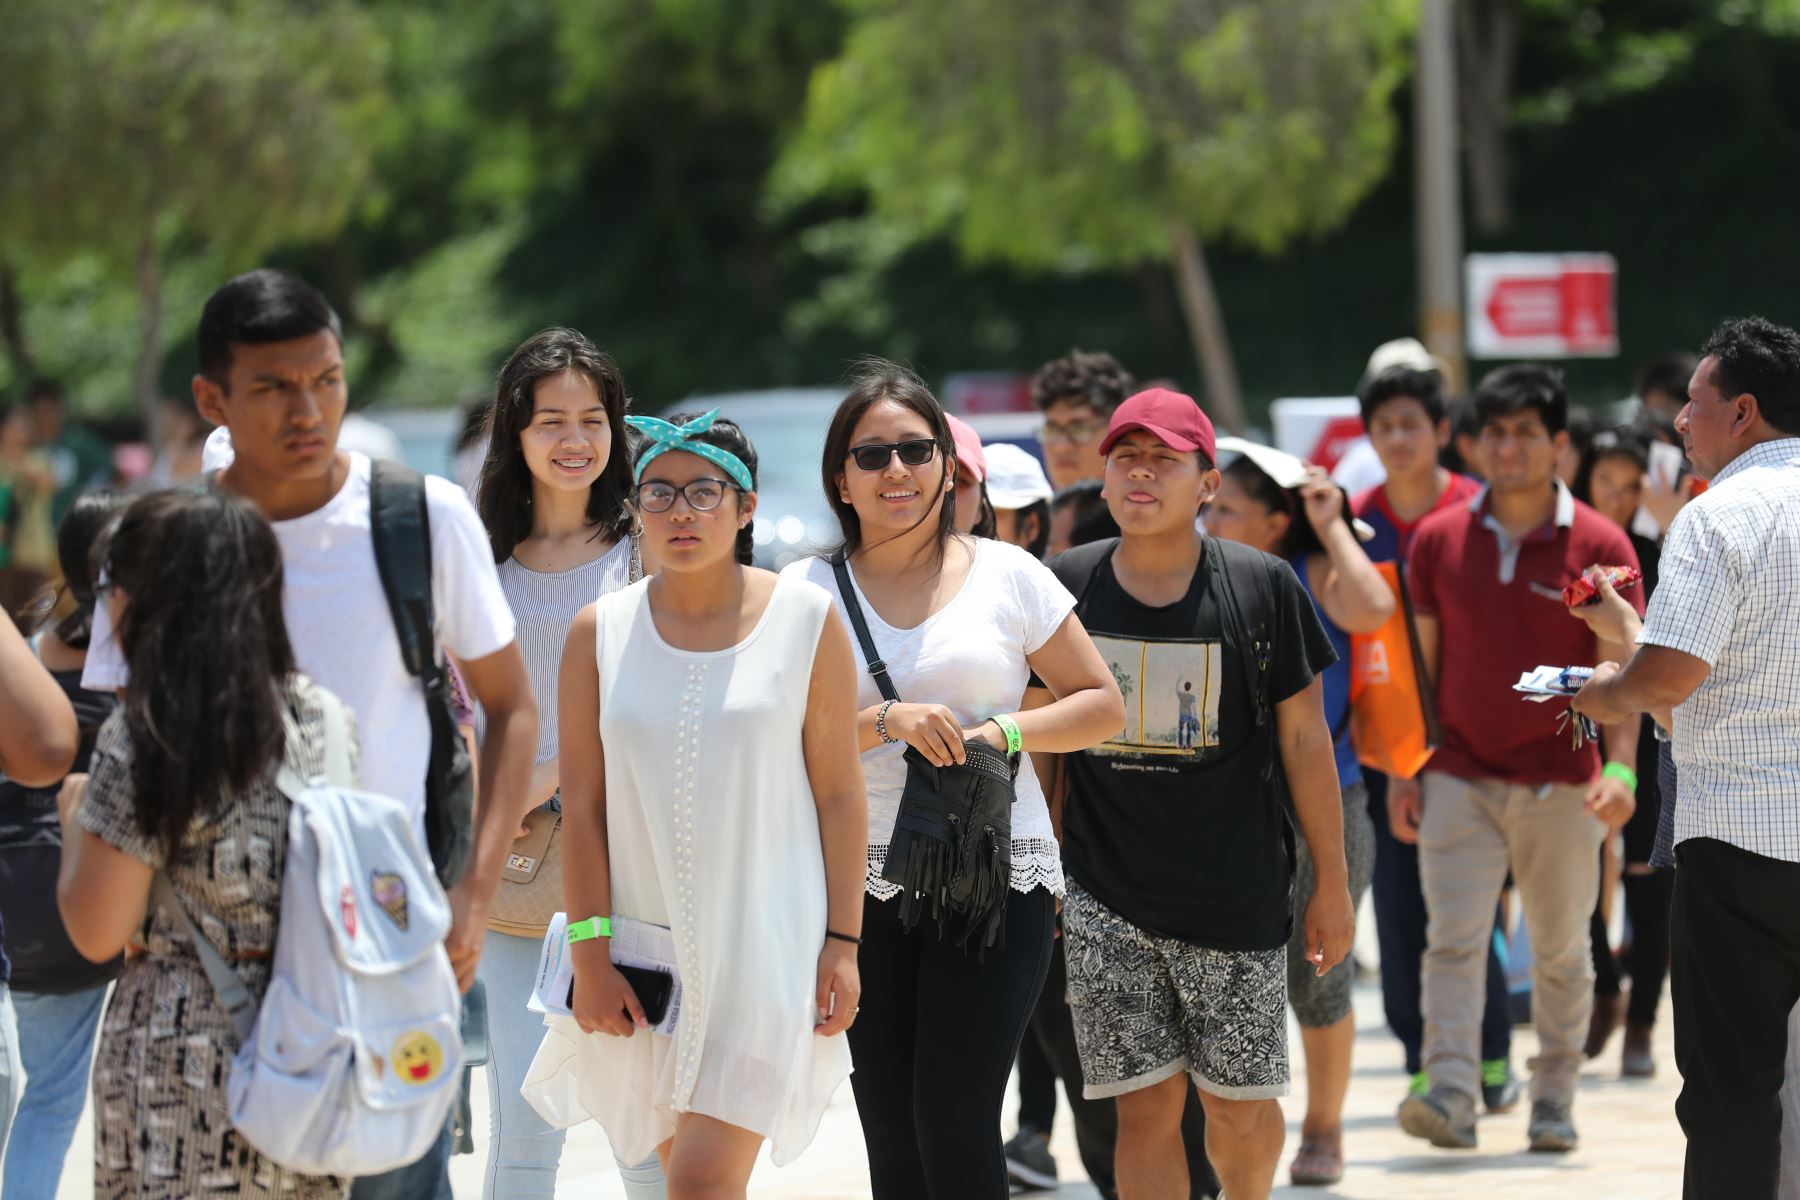 23 universidades aún siguen en carrera para obtener el licenciamiento. Foto: ANDINA/Juan Carlos Guzmán.